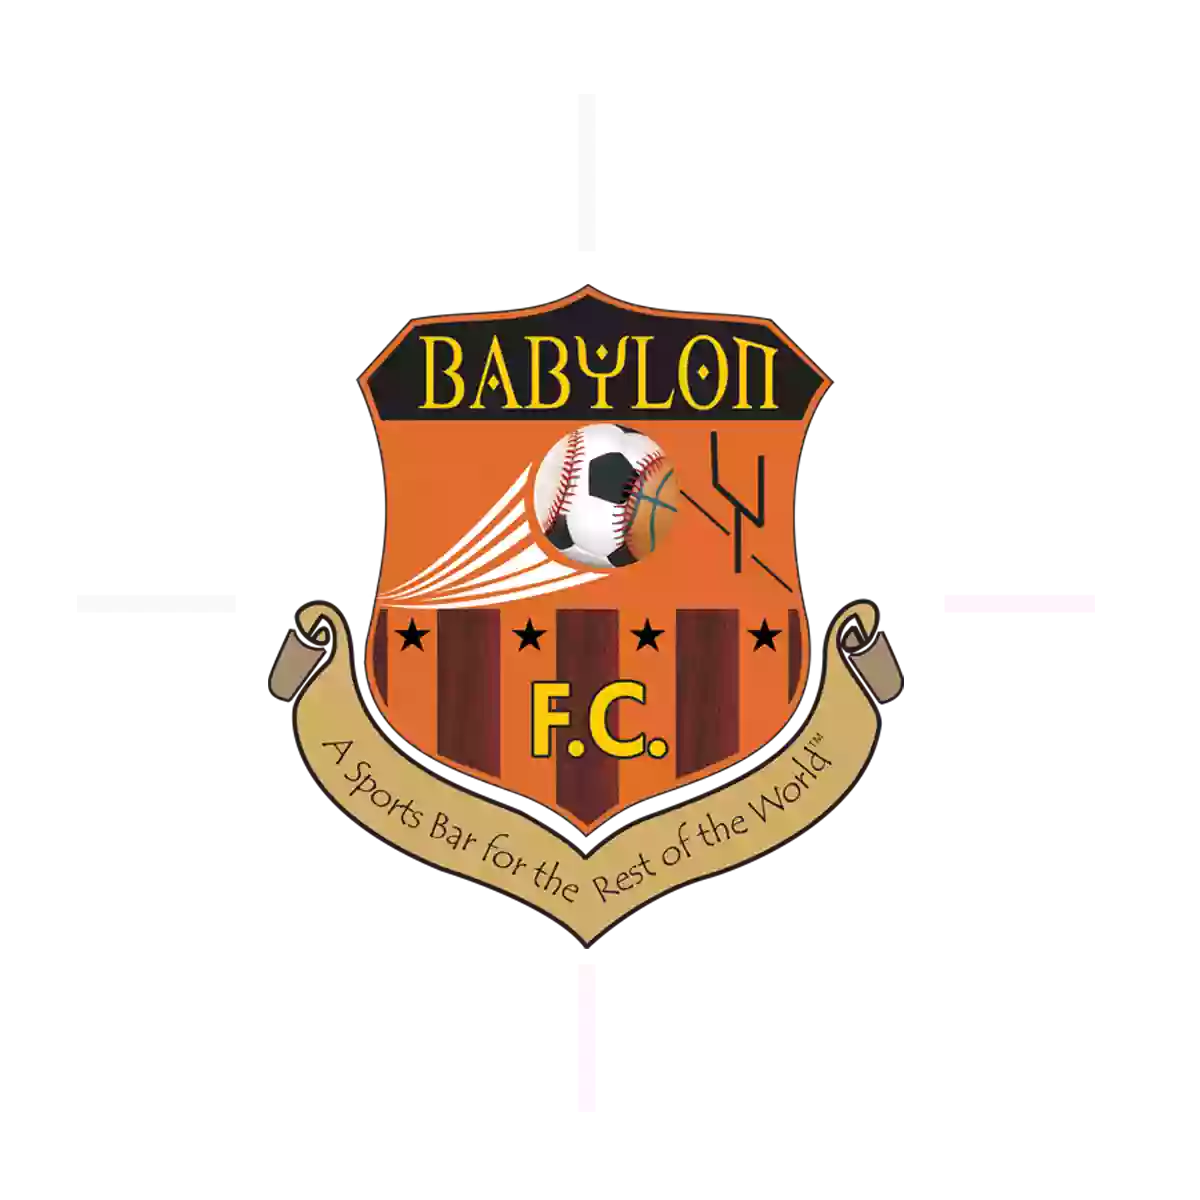 Babylon Futbol Cafe